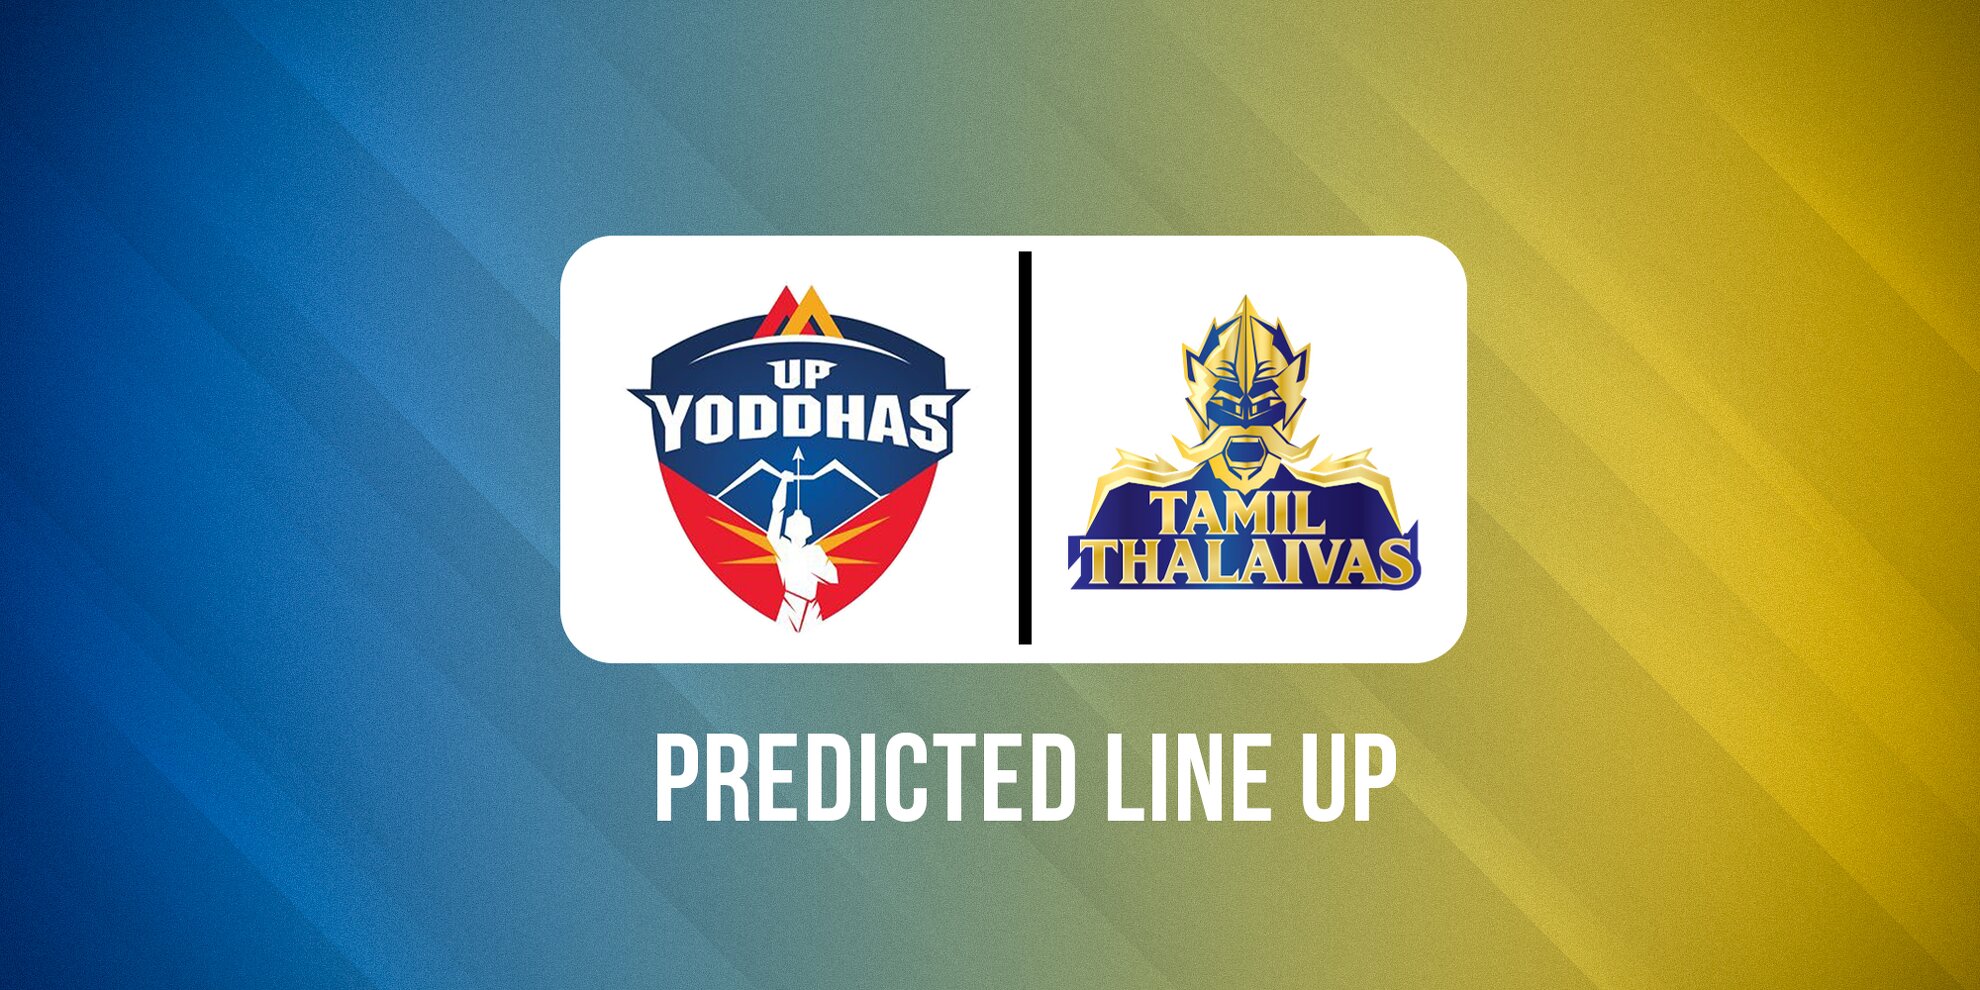 UP Yoddhas vs Tamil Thalaivas Predicted Lineups